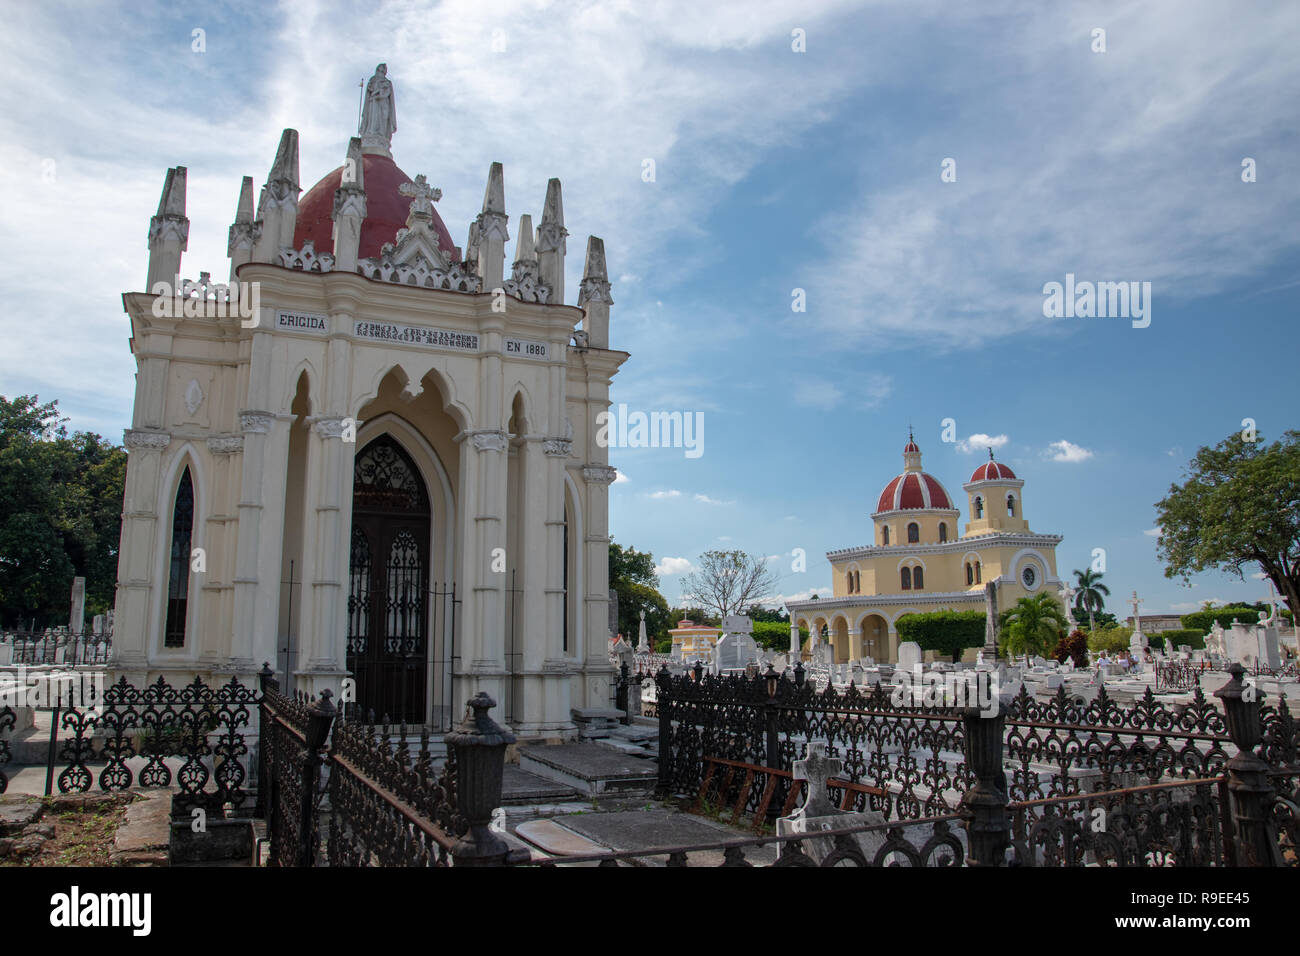 El Cementario de Cristobal Colon (Colon) Cimetière a été fondée en 1876 dans le Vedado, La Havane, Cuba pour remplacer Espada cimetière. Le nom de Christophe Columb Banque D'Images